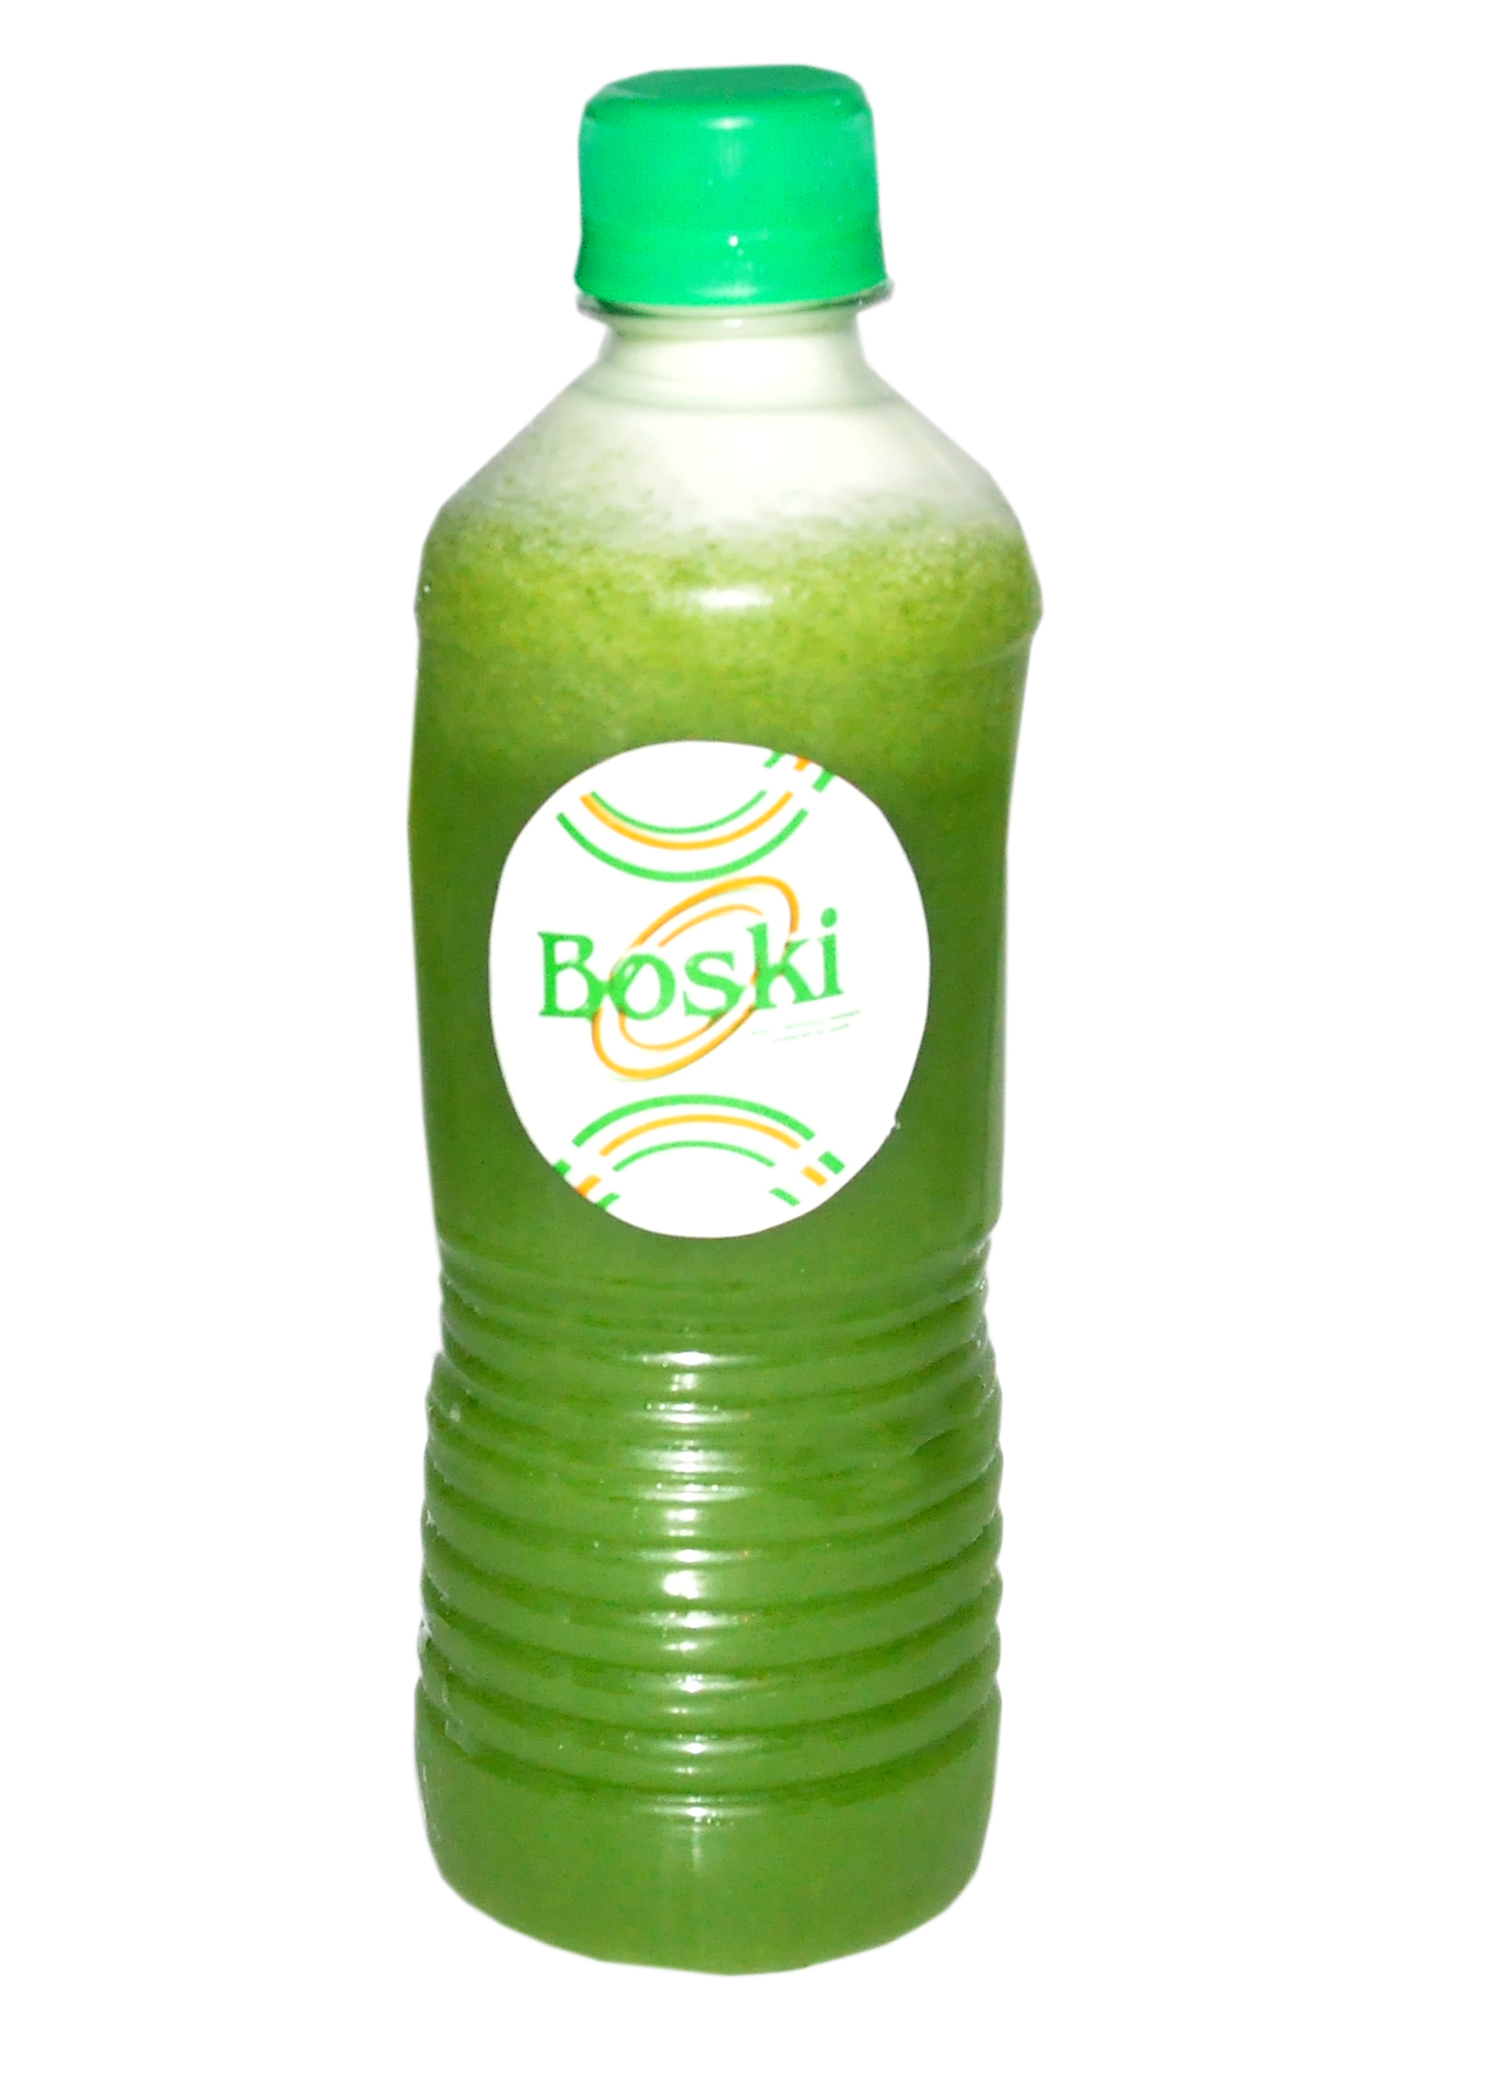 Green diet juice